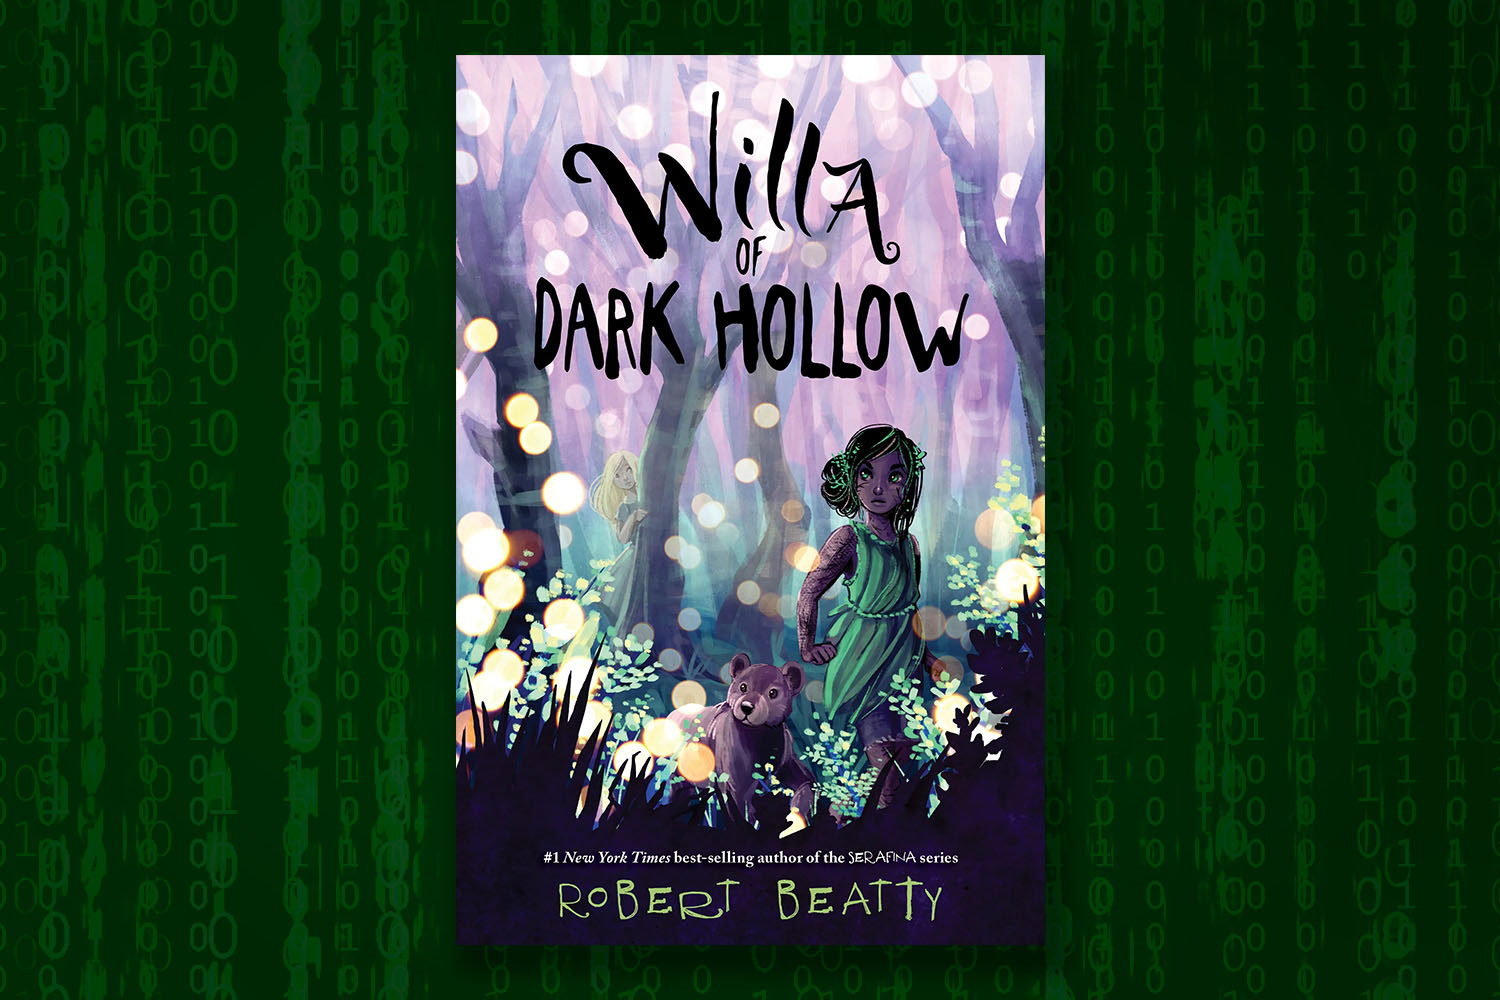 Willa of Dark Hollow Book on background